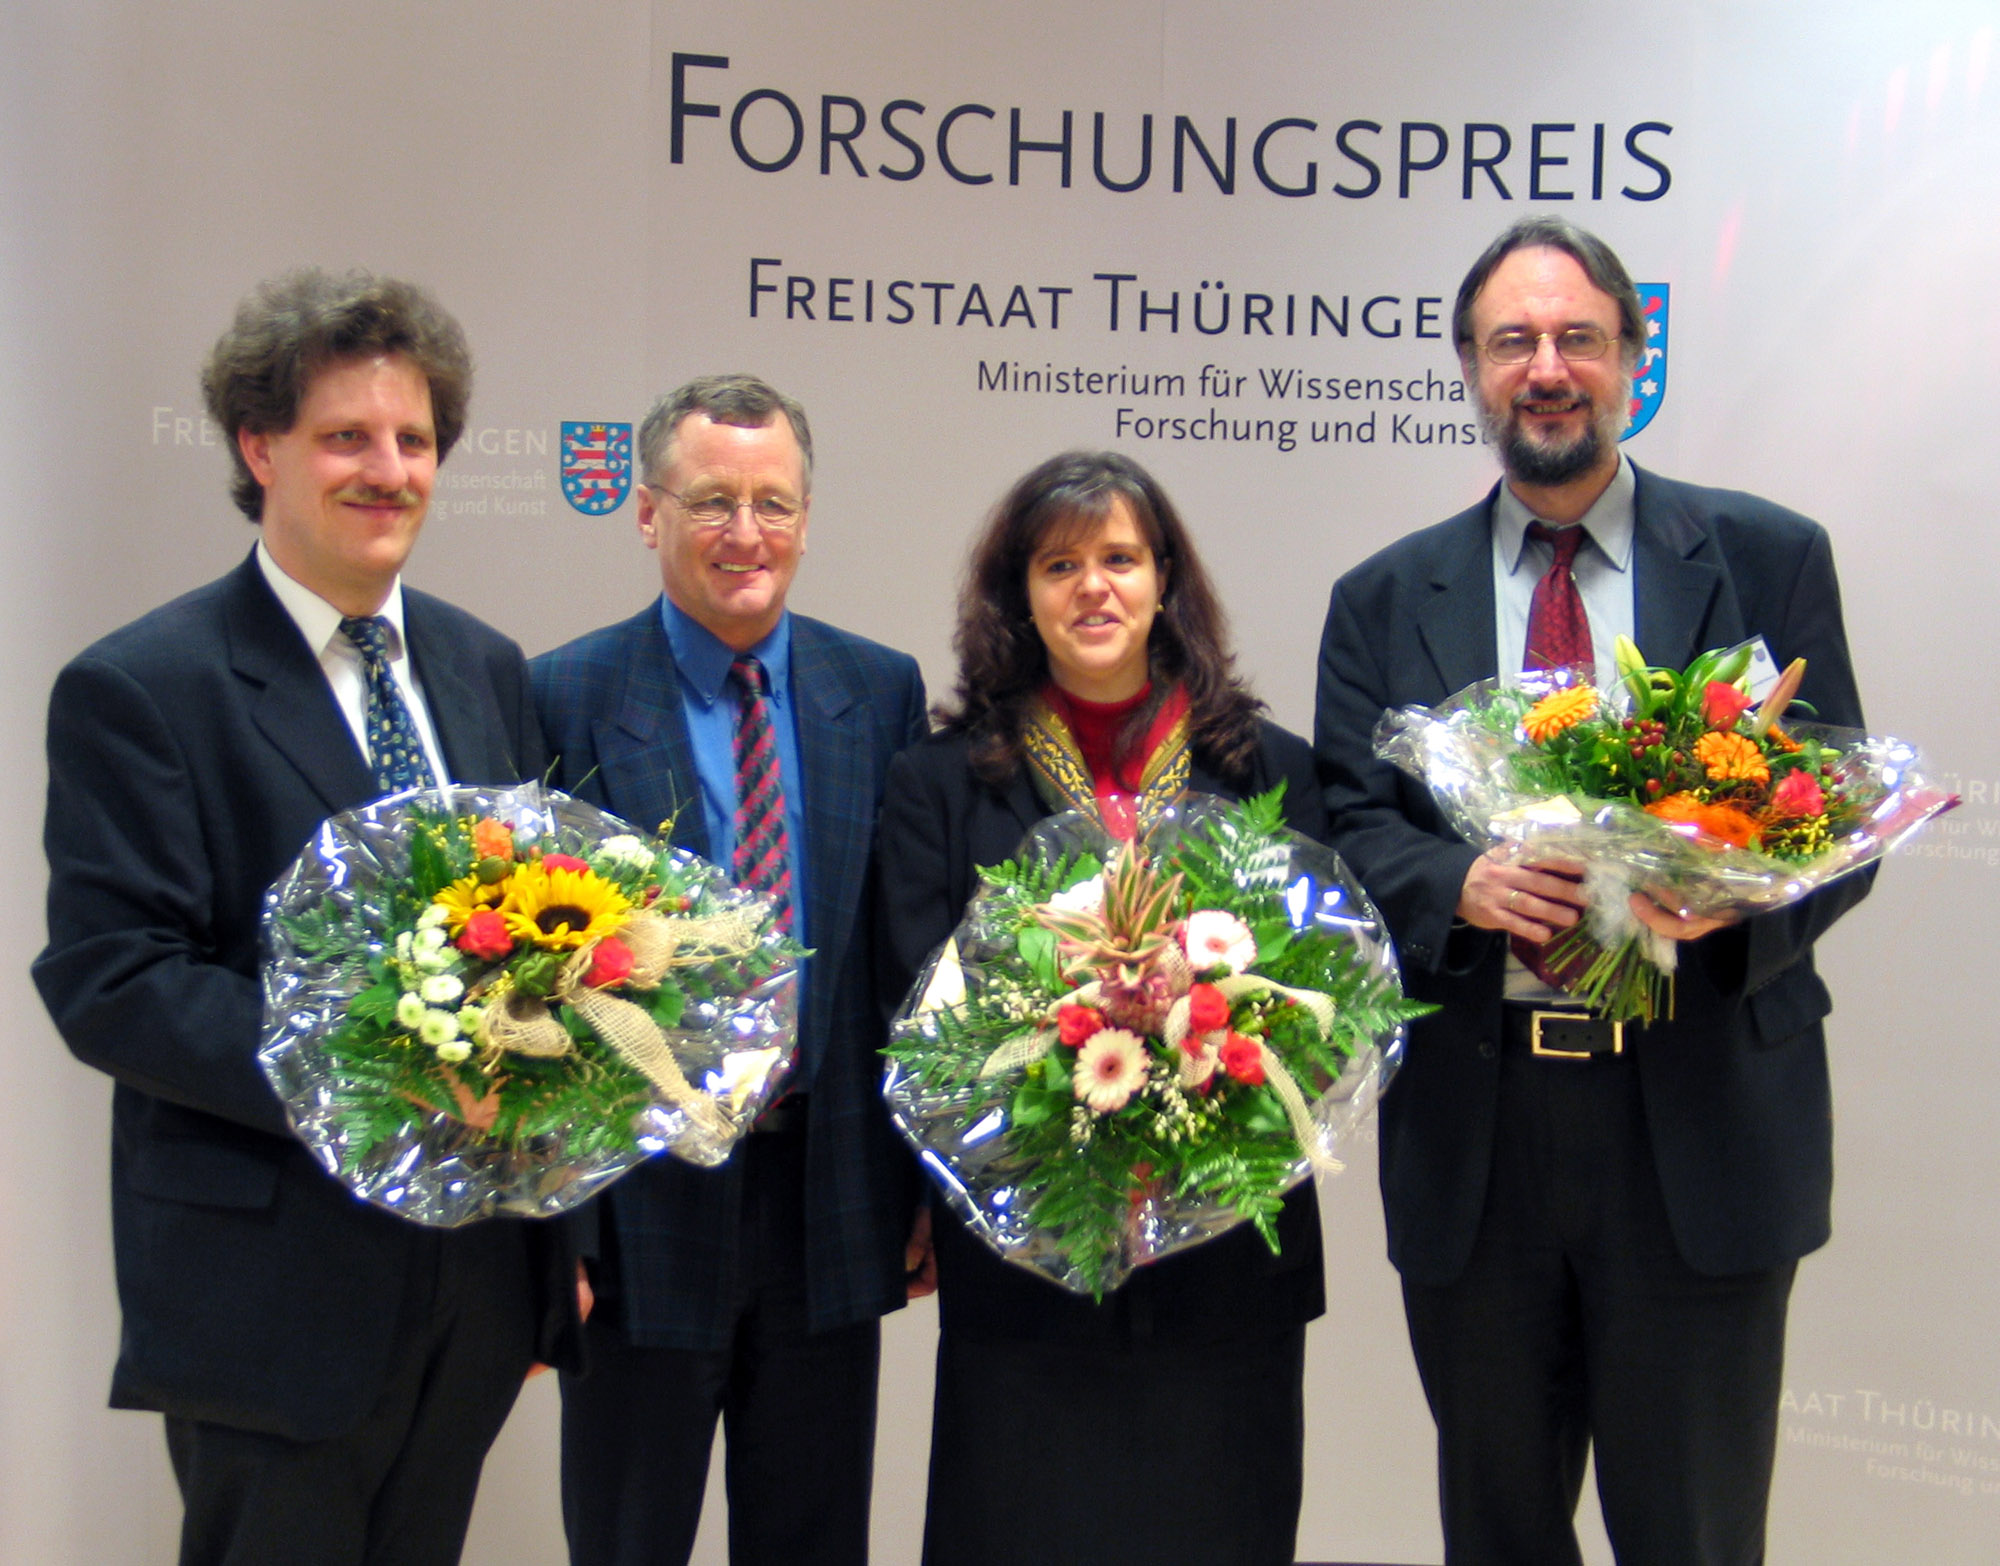 Die Preisträger des Forschungspreises: Prof. Thomas Sporer, Diemer de Vries, Dr. Sandra Brix und Prof. Karlheinz Brandenburg.